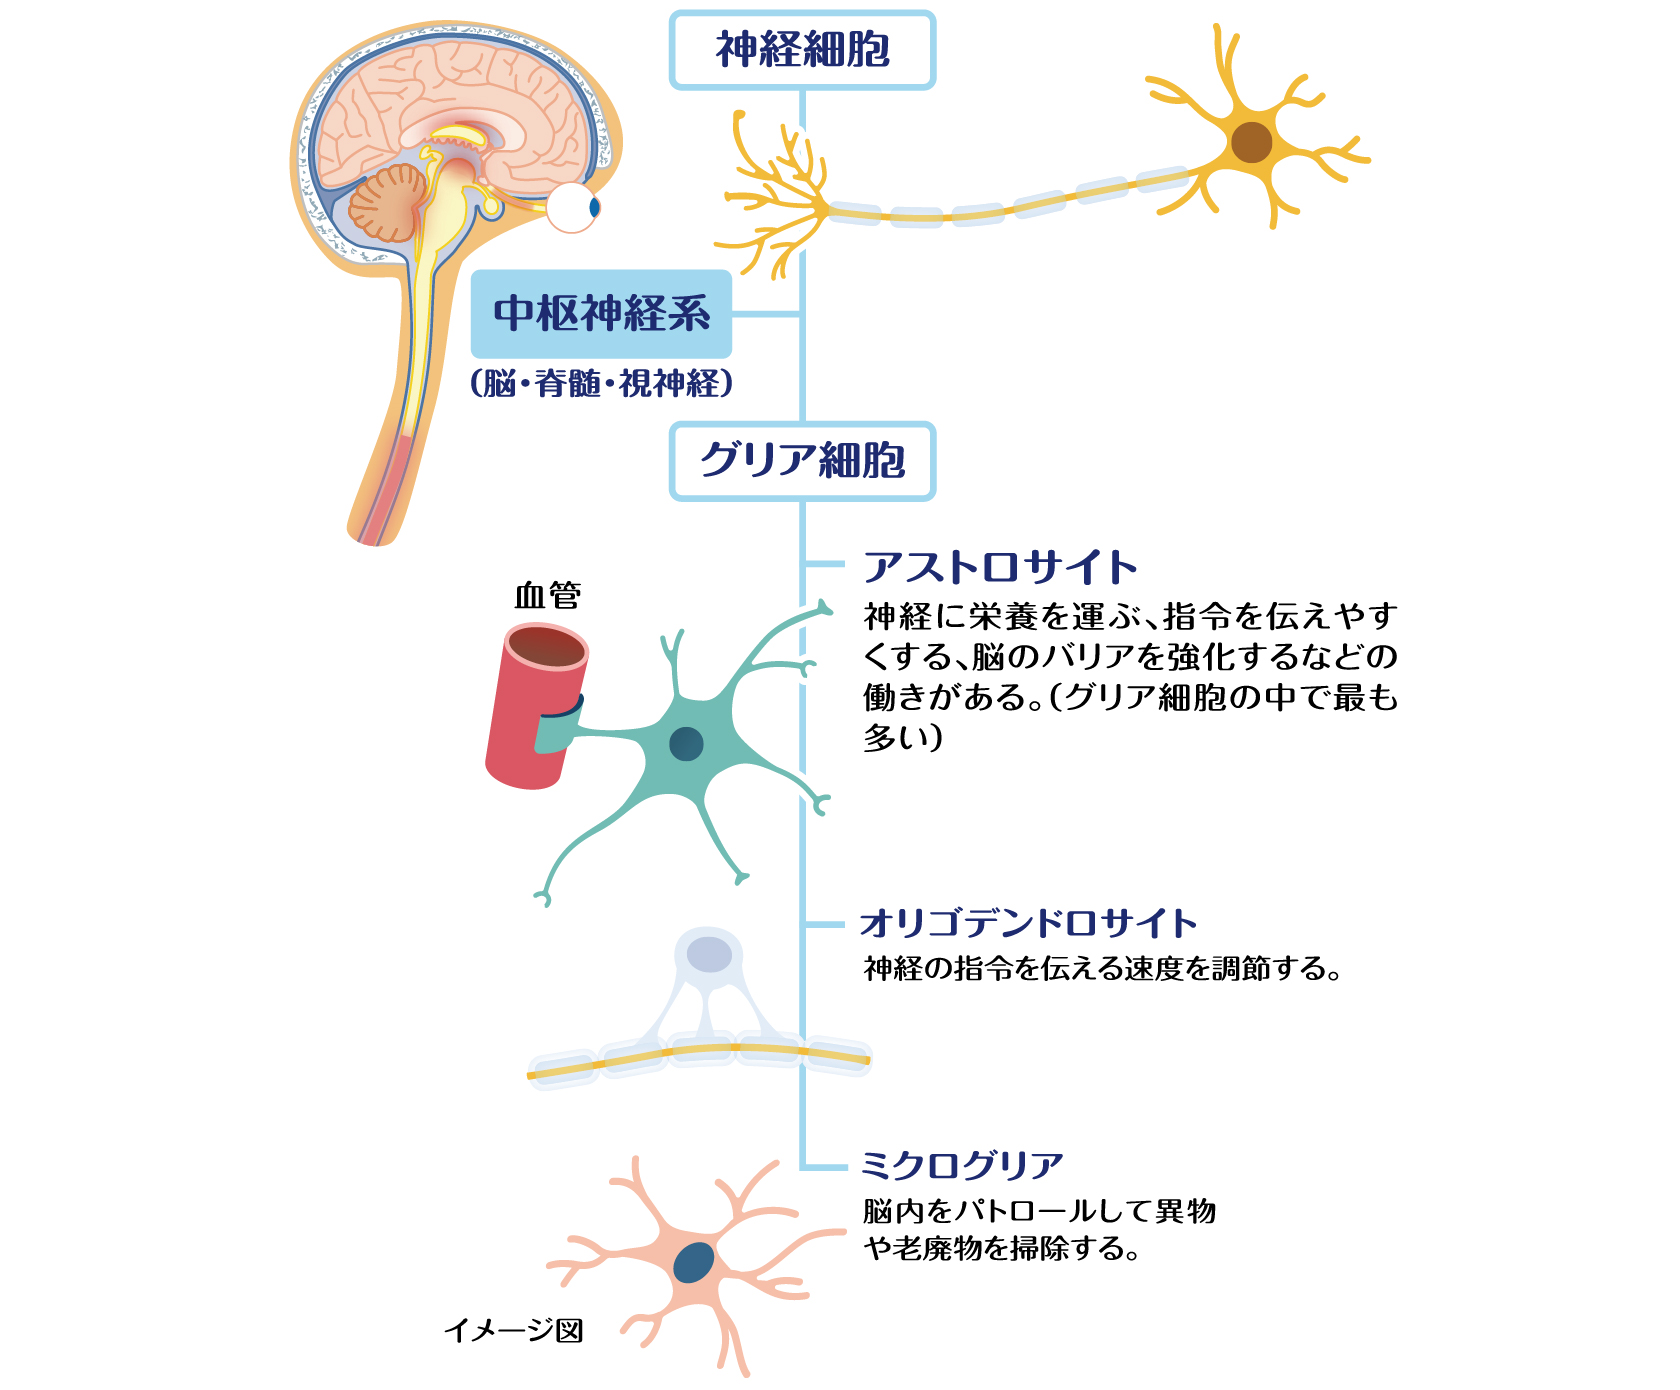 中枢神経系のイメージ図。アストロサイトは、神経に栄養を運ぶ、指令を伝えやすくする、脳のバリアを強化するなどの働きがある（グリア細胞の中で最も多い）。オリゴデンドロサイトは、神経の指令を伝える速度を調節する。ミクログリアは、脳内をパトロールして異物や老廃物を排除する。